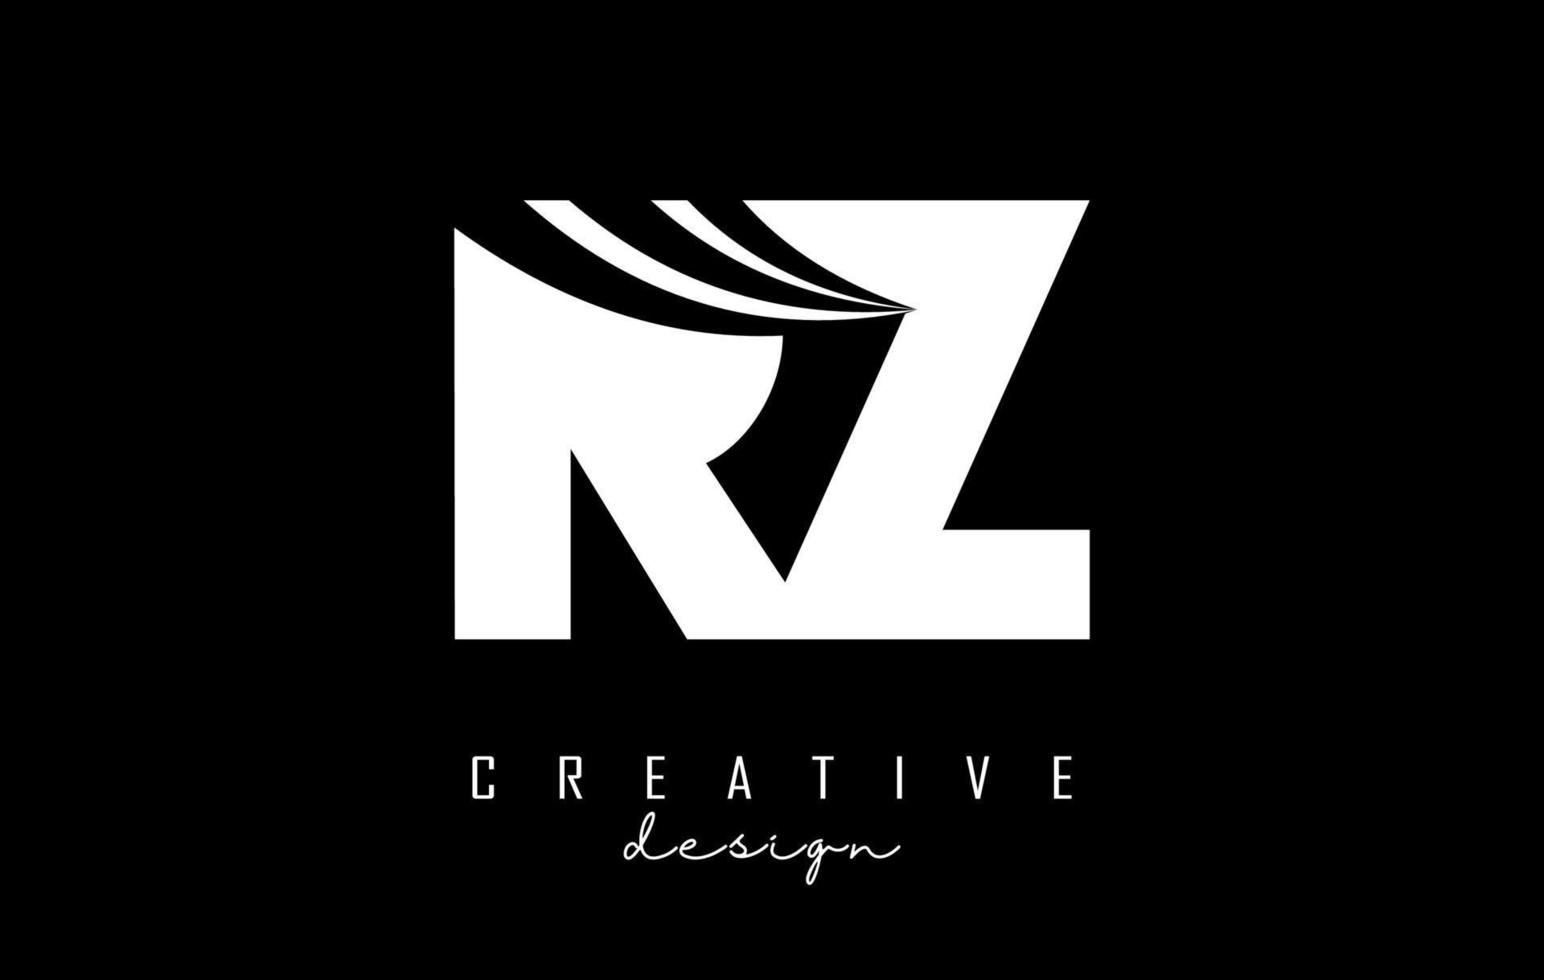 kreative weiße buchstaben rz rz logo mit führenden linien und straßenkonzeptdesign. Buchstaben mit geometrischem Design. vektor